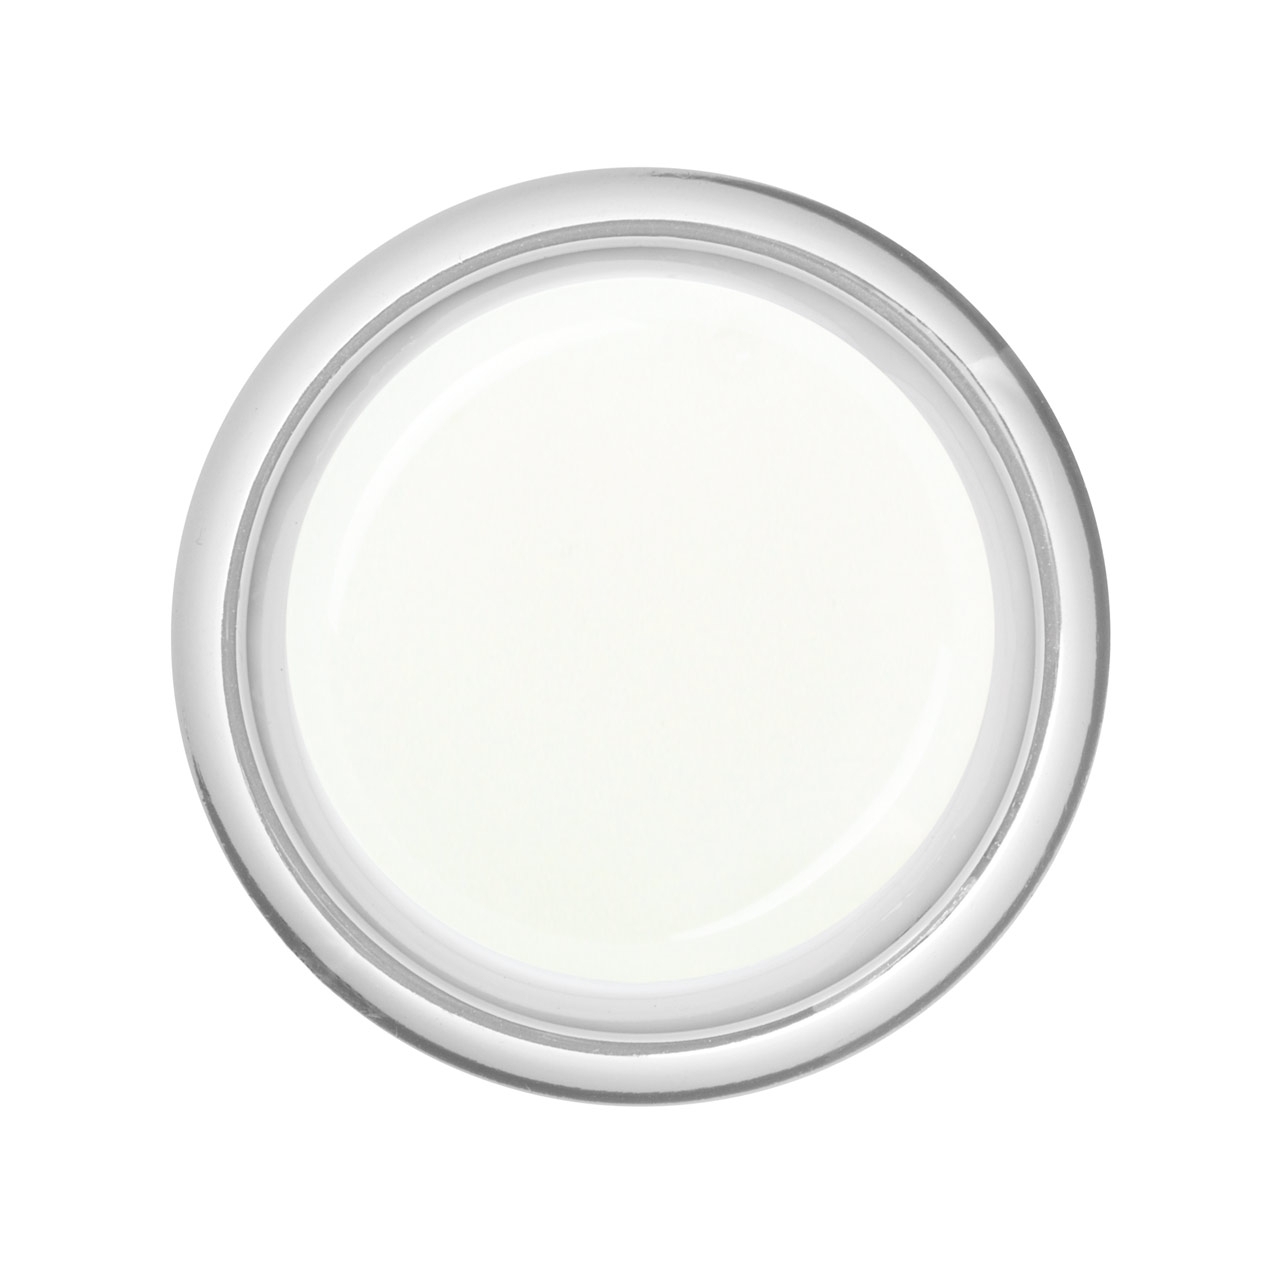 BAEHR BEAUTY CONCEPT - NAILS Schablonen French-Gel Medium Weiß 5 ml